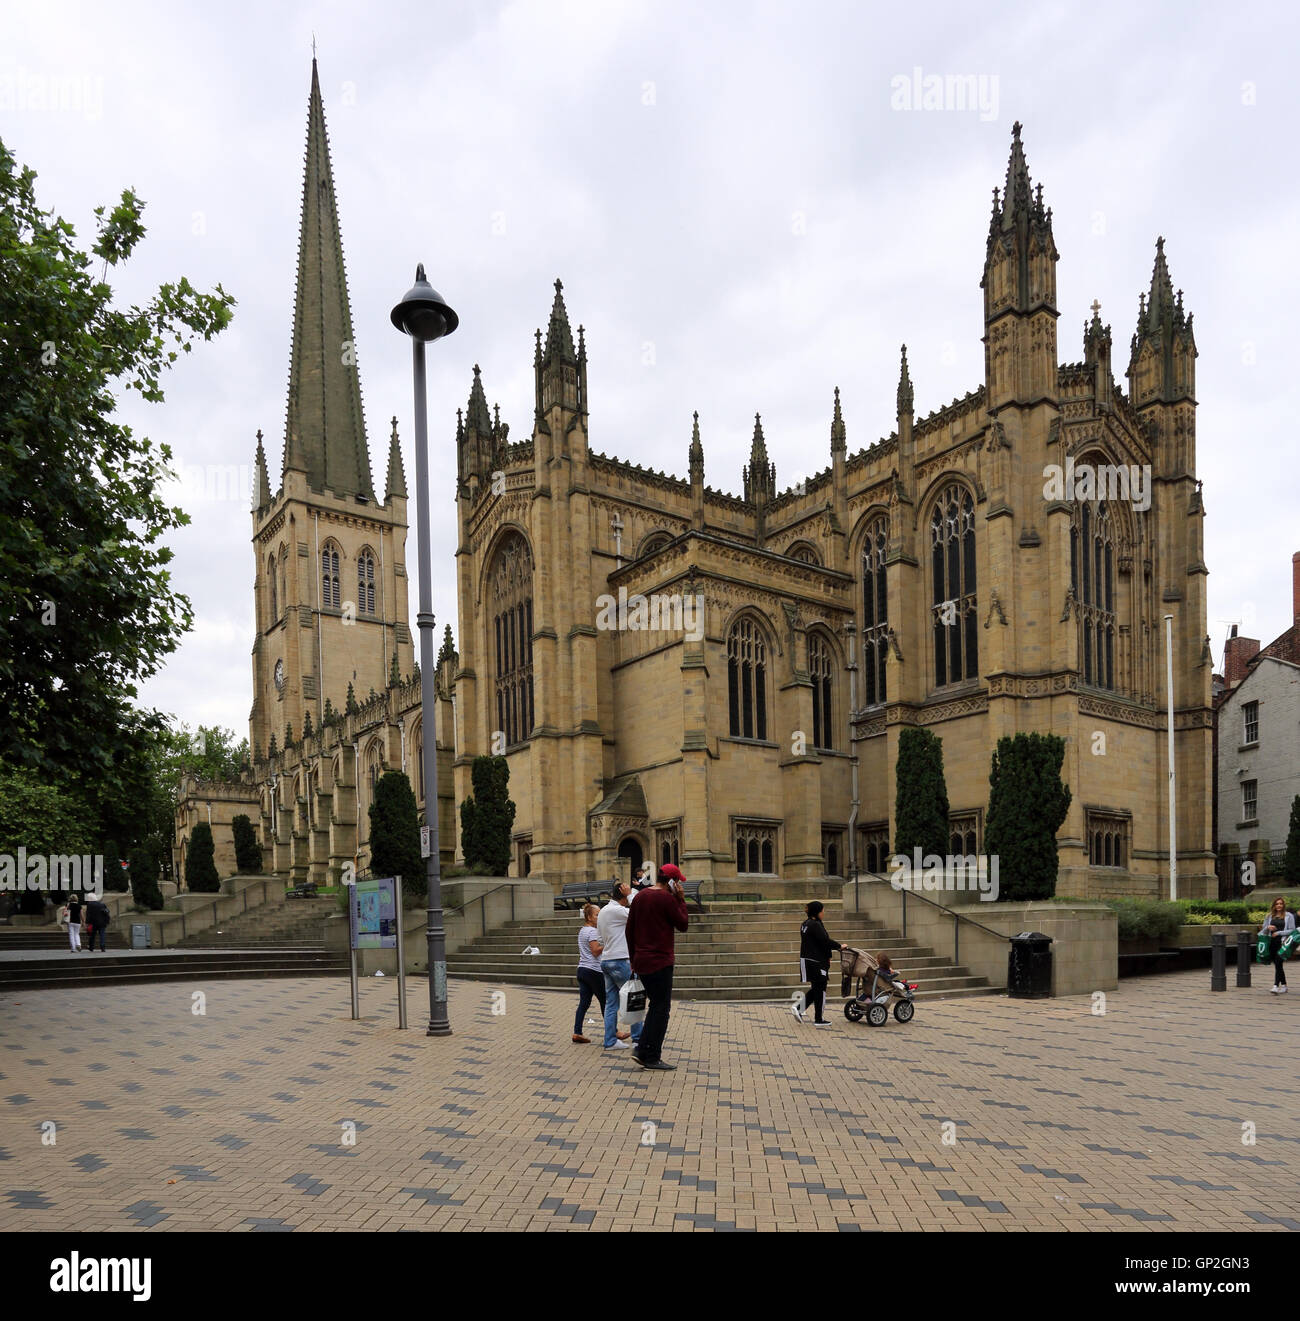 Wakefield cathédrale, une cathédrale médiévale dans le centre-ville de Wakefield, Angleterre, Royaume-Uni. Banque D'Images